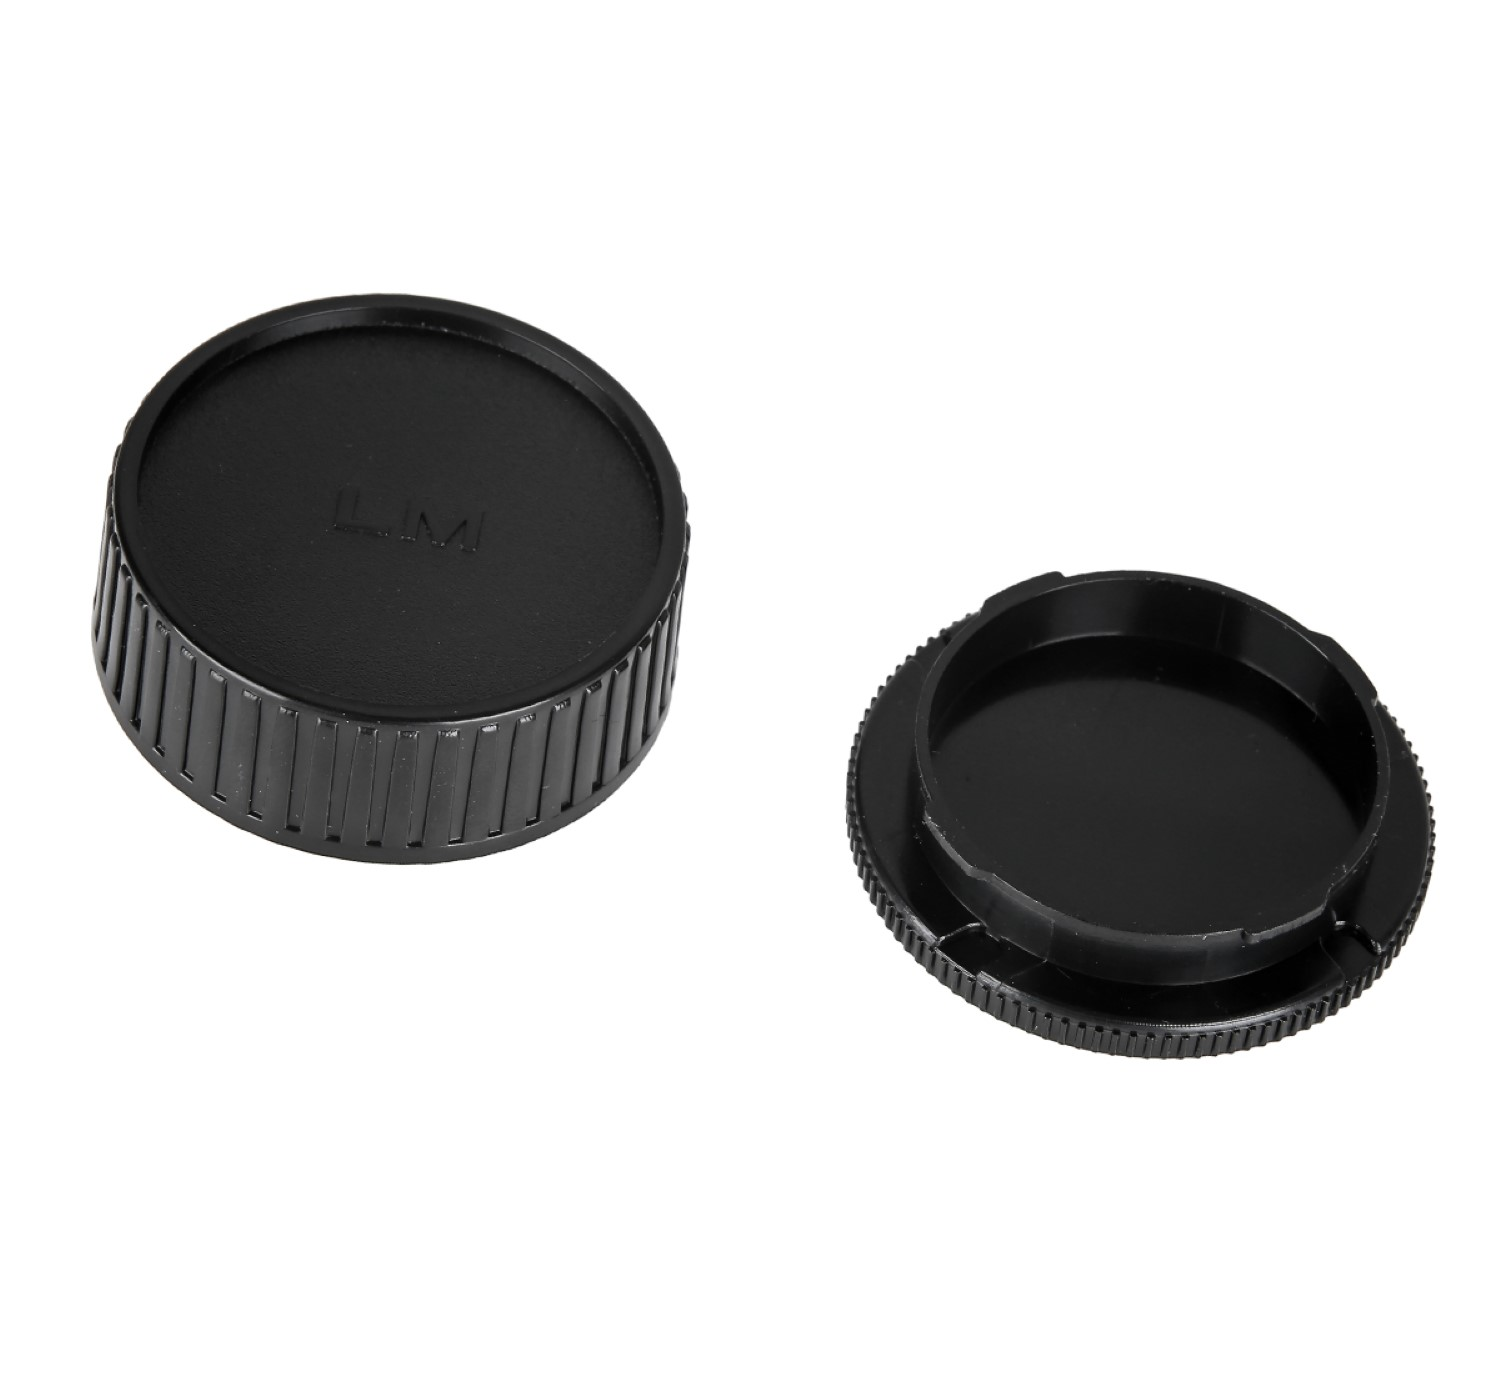 AYEX Gehäusedeckel + M Black, Body Gehäusedeckel, für Leica Objektivdeckel, passend